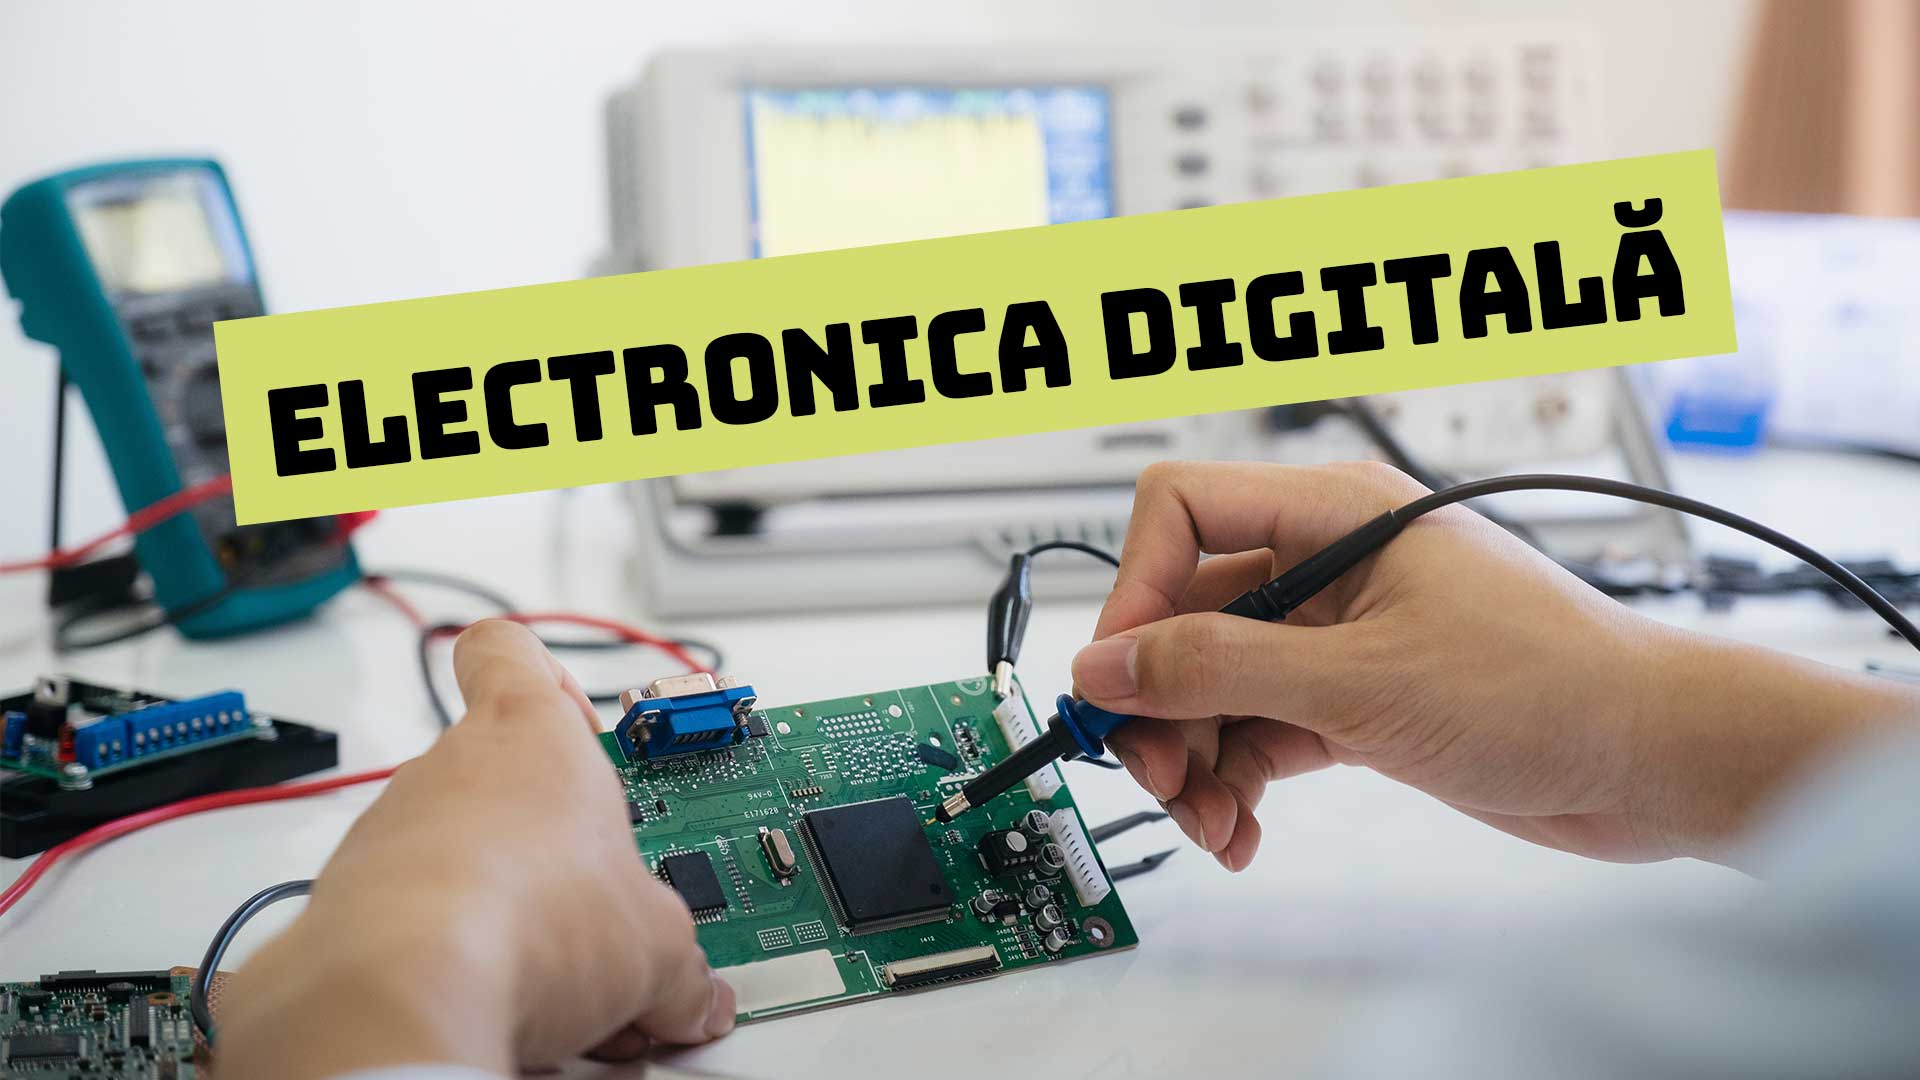 Electronica digitală